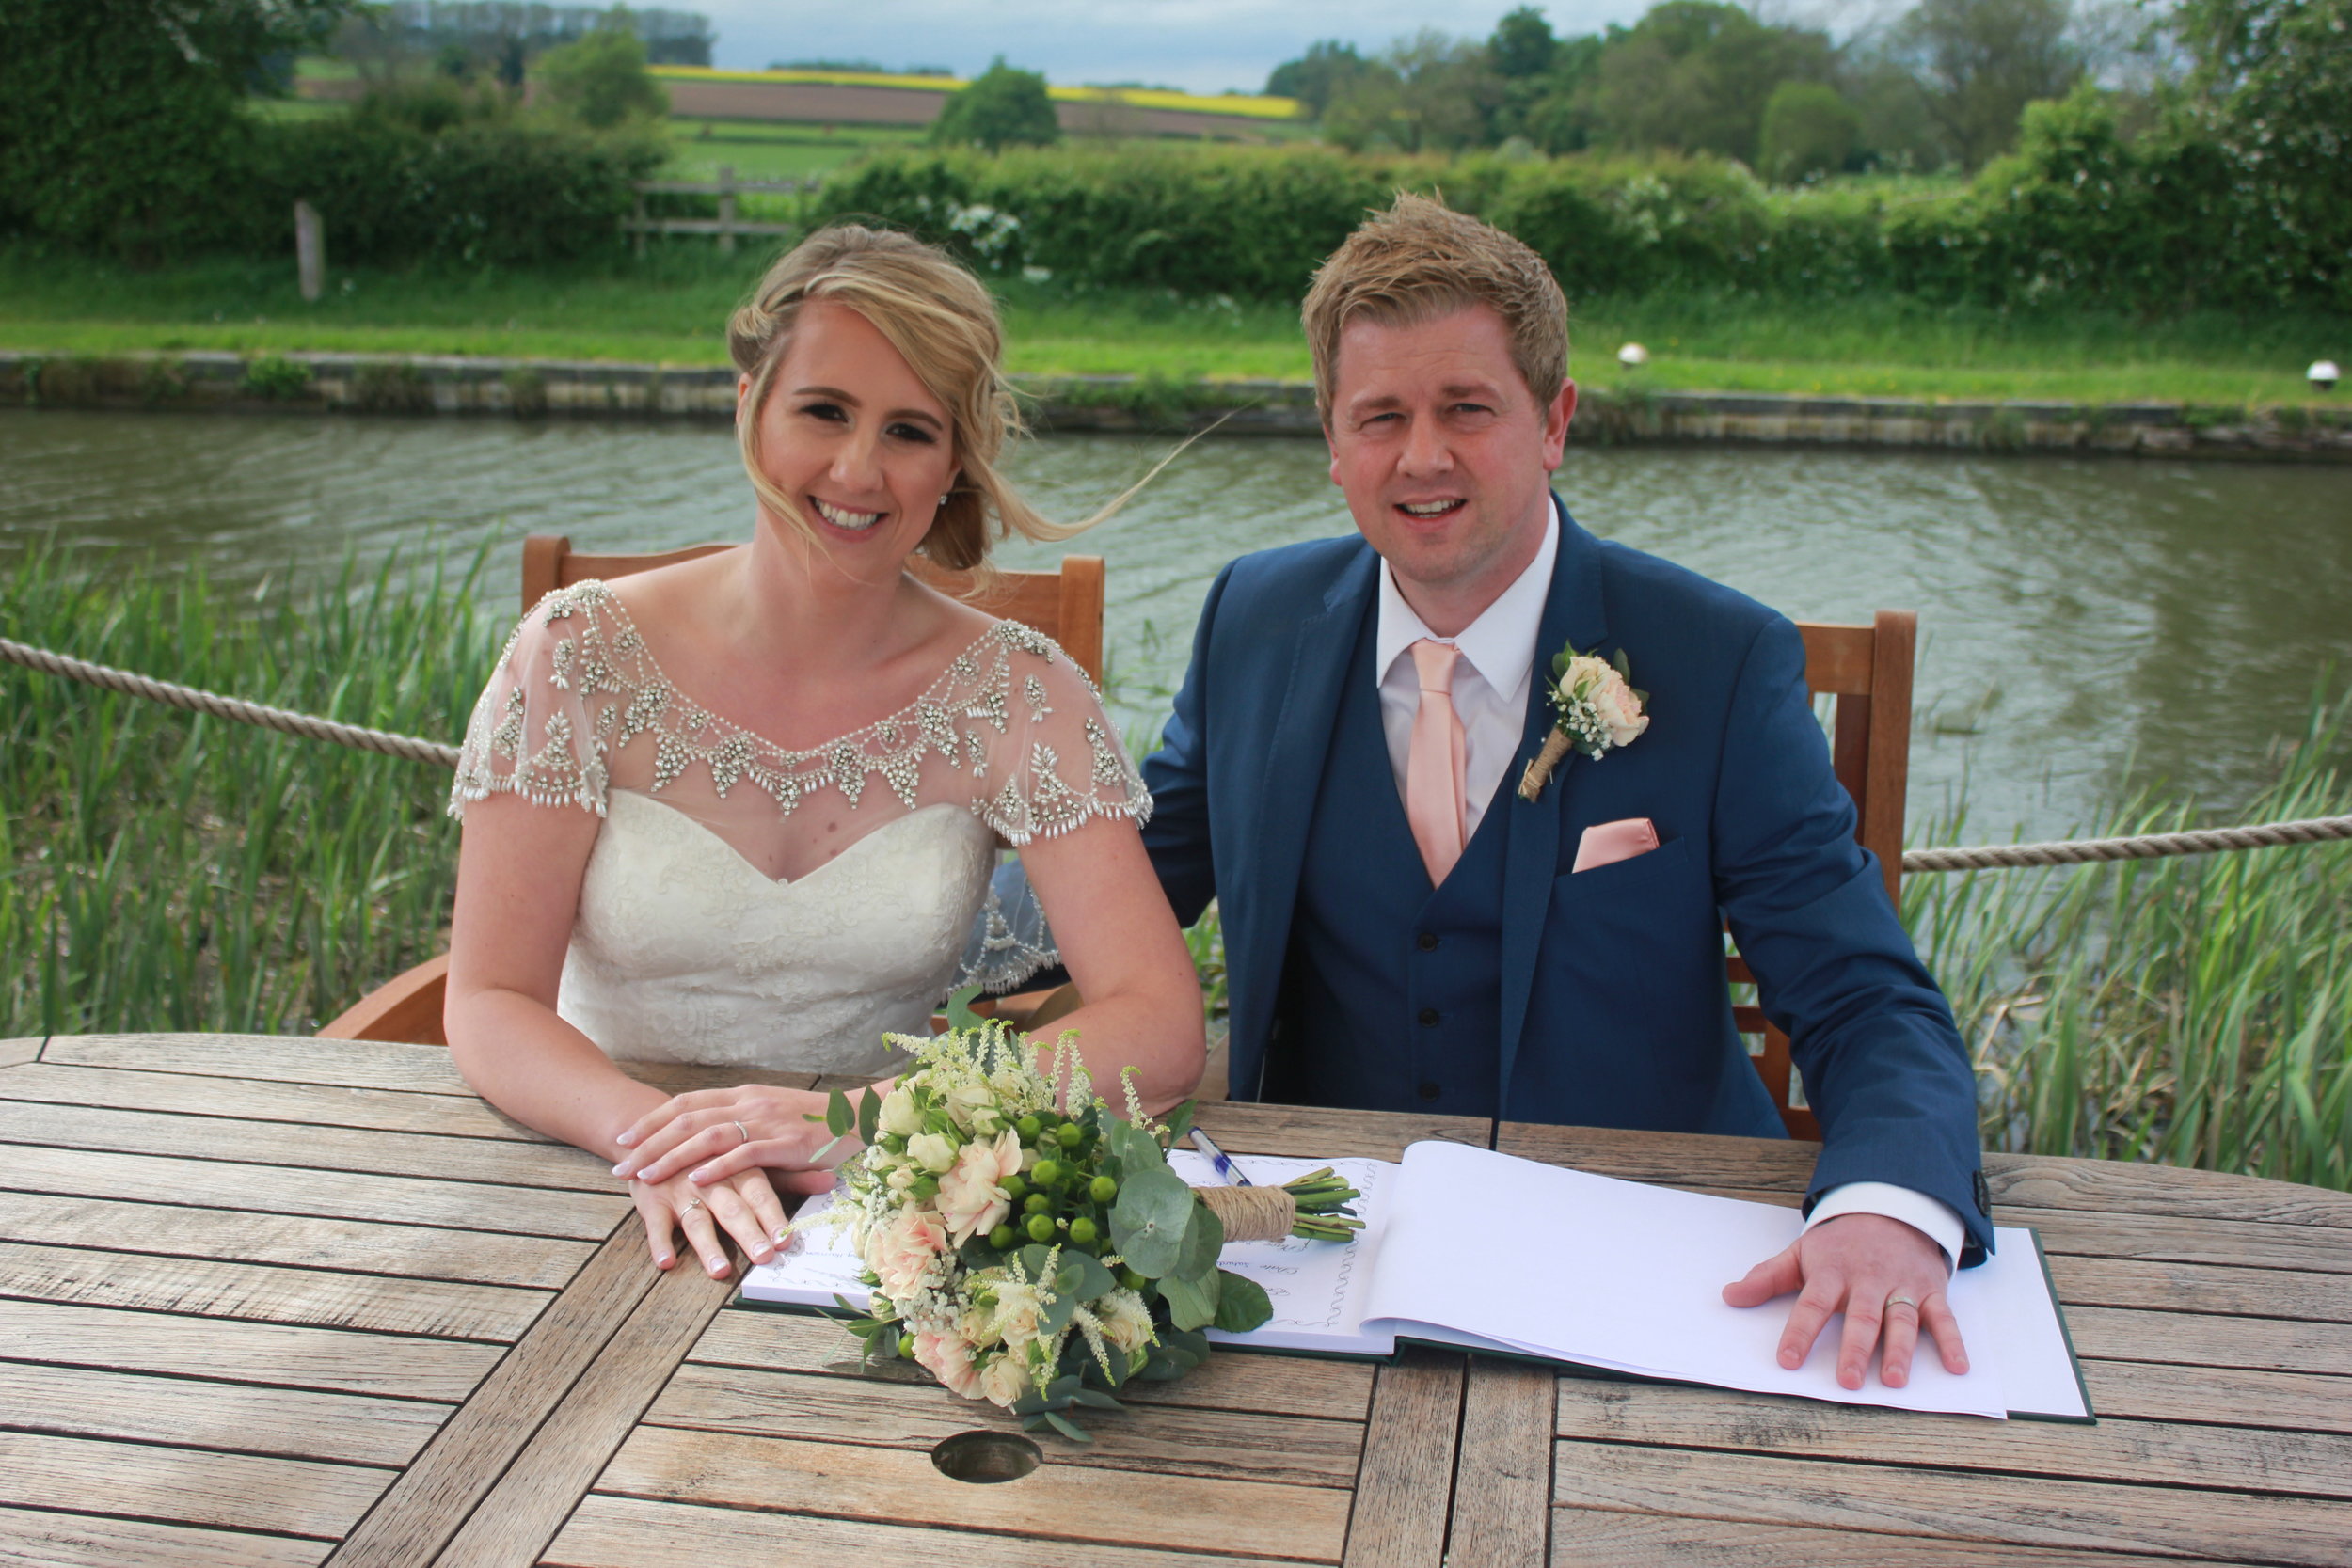 My Perfect Ceremony - Wedding Celebrant Testimonial - Lucy & Wayne